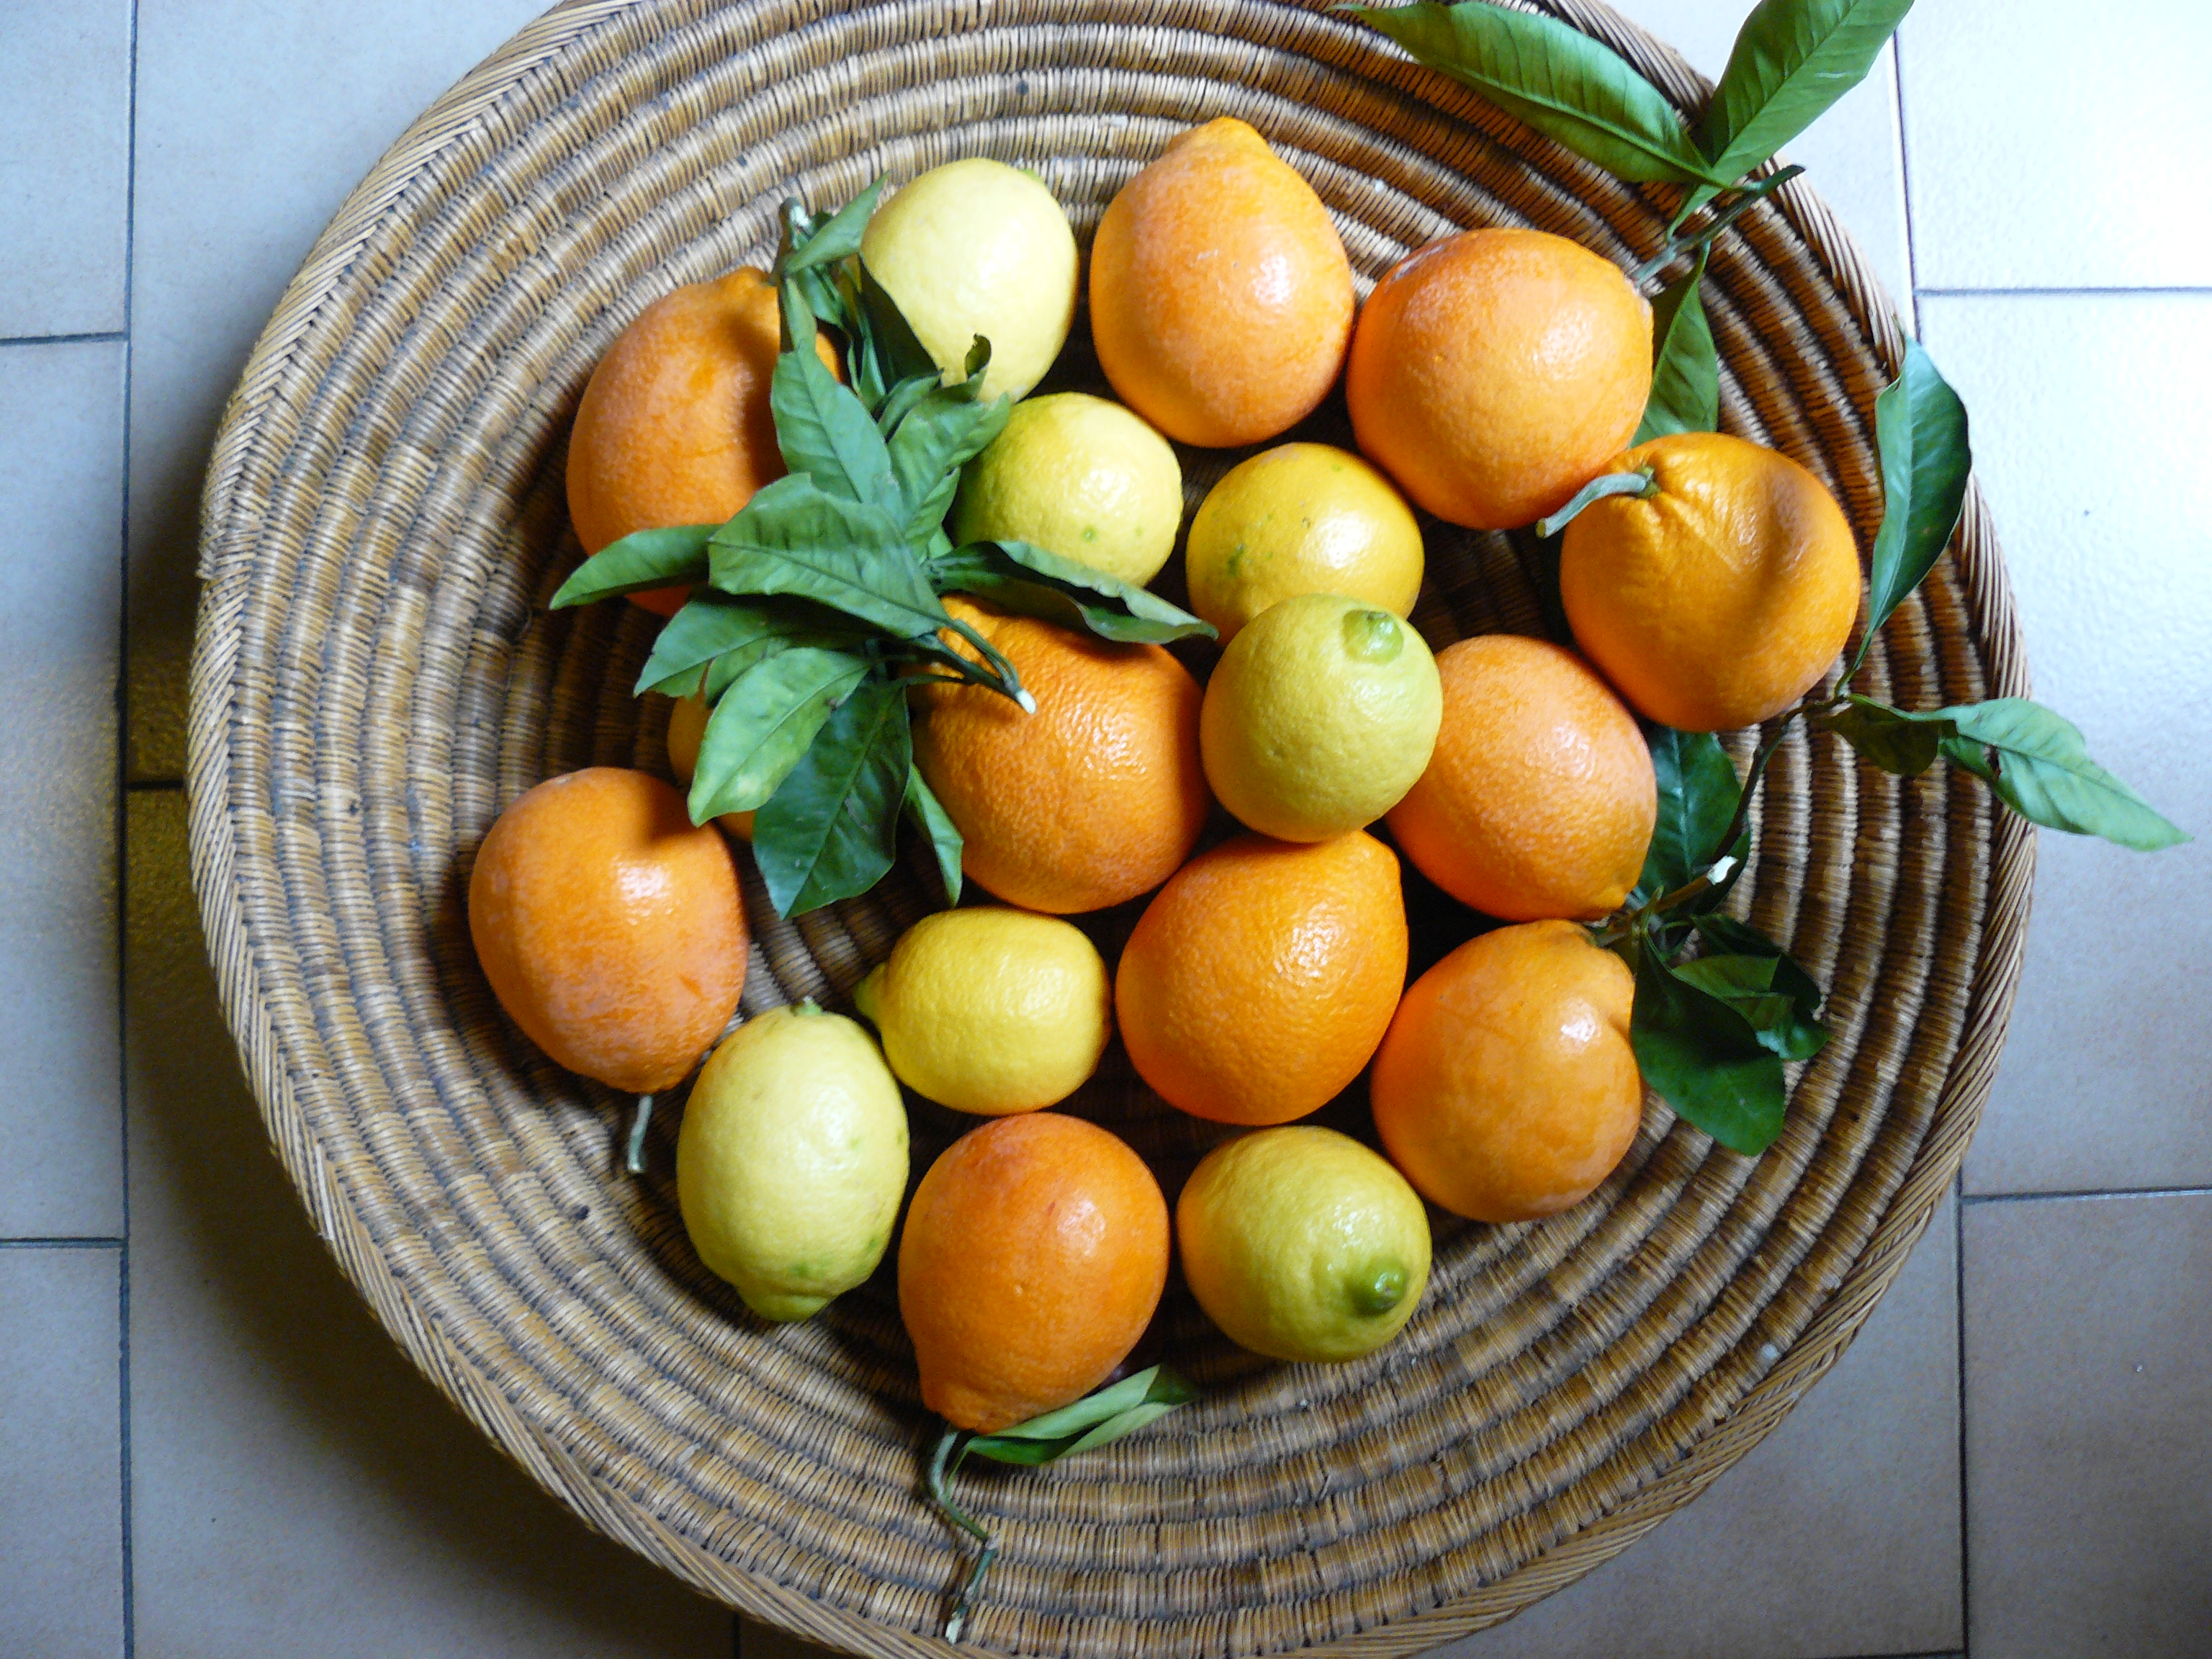 Oranges and a lemon lunch | rachel eats